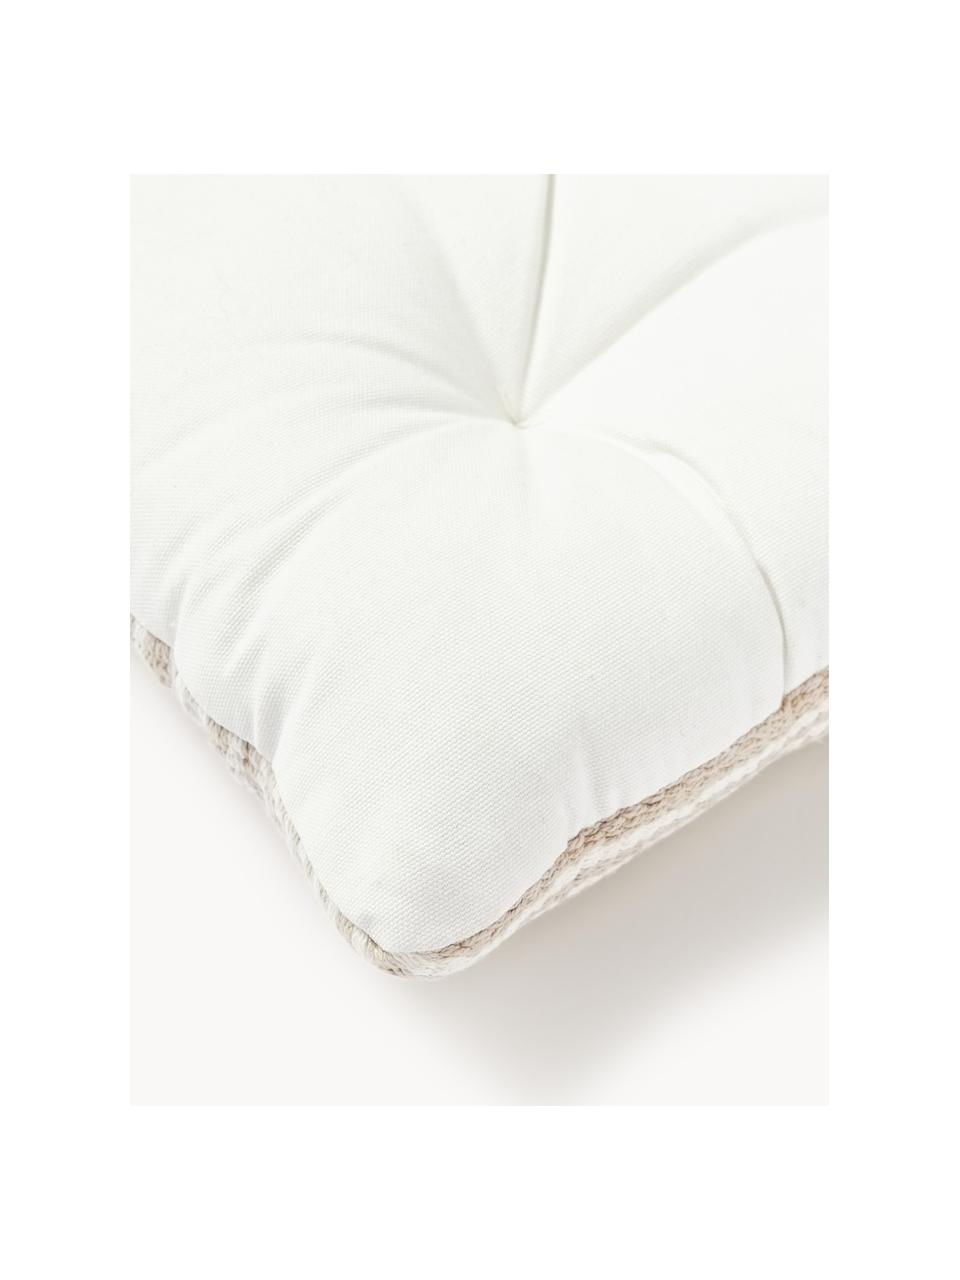 Gestreifte Baumwoll-Sitzkissen Silia, 2 Stück, Hülle: 100 % Baumwolle, Hellbeige, Weiß, B 40 x L 40 cm